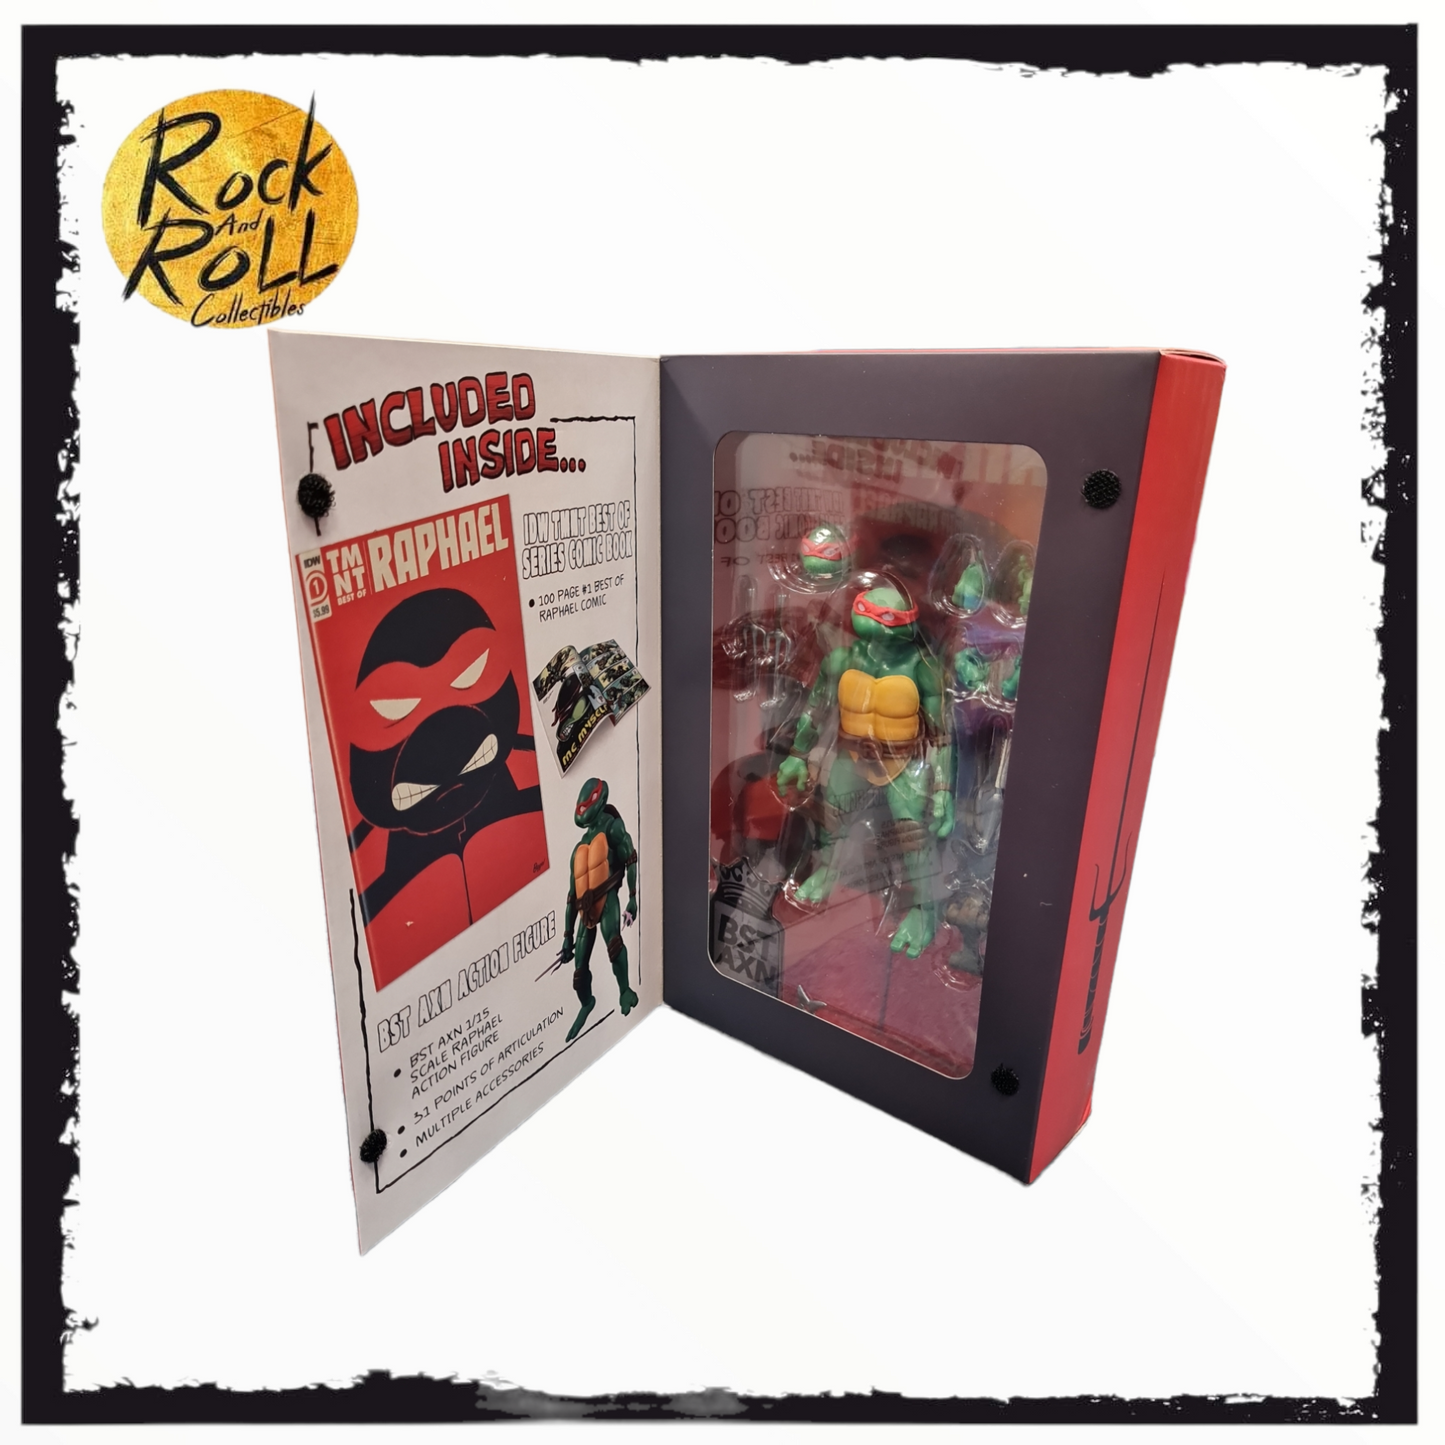 Teenage Mutant Ninja Turtles BST AXN Comic Book + Action Figure - Raphael